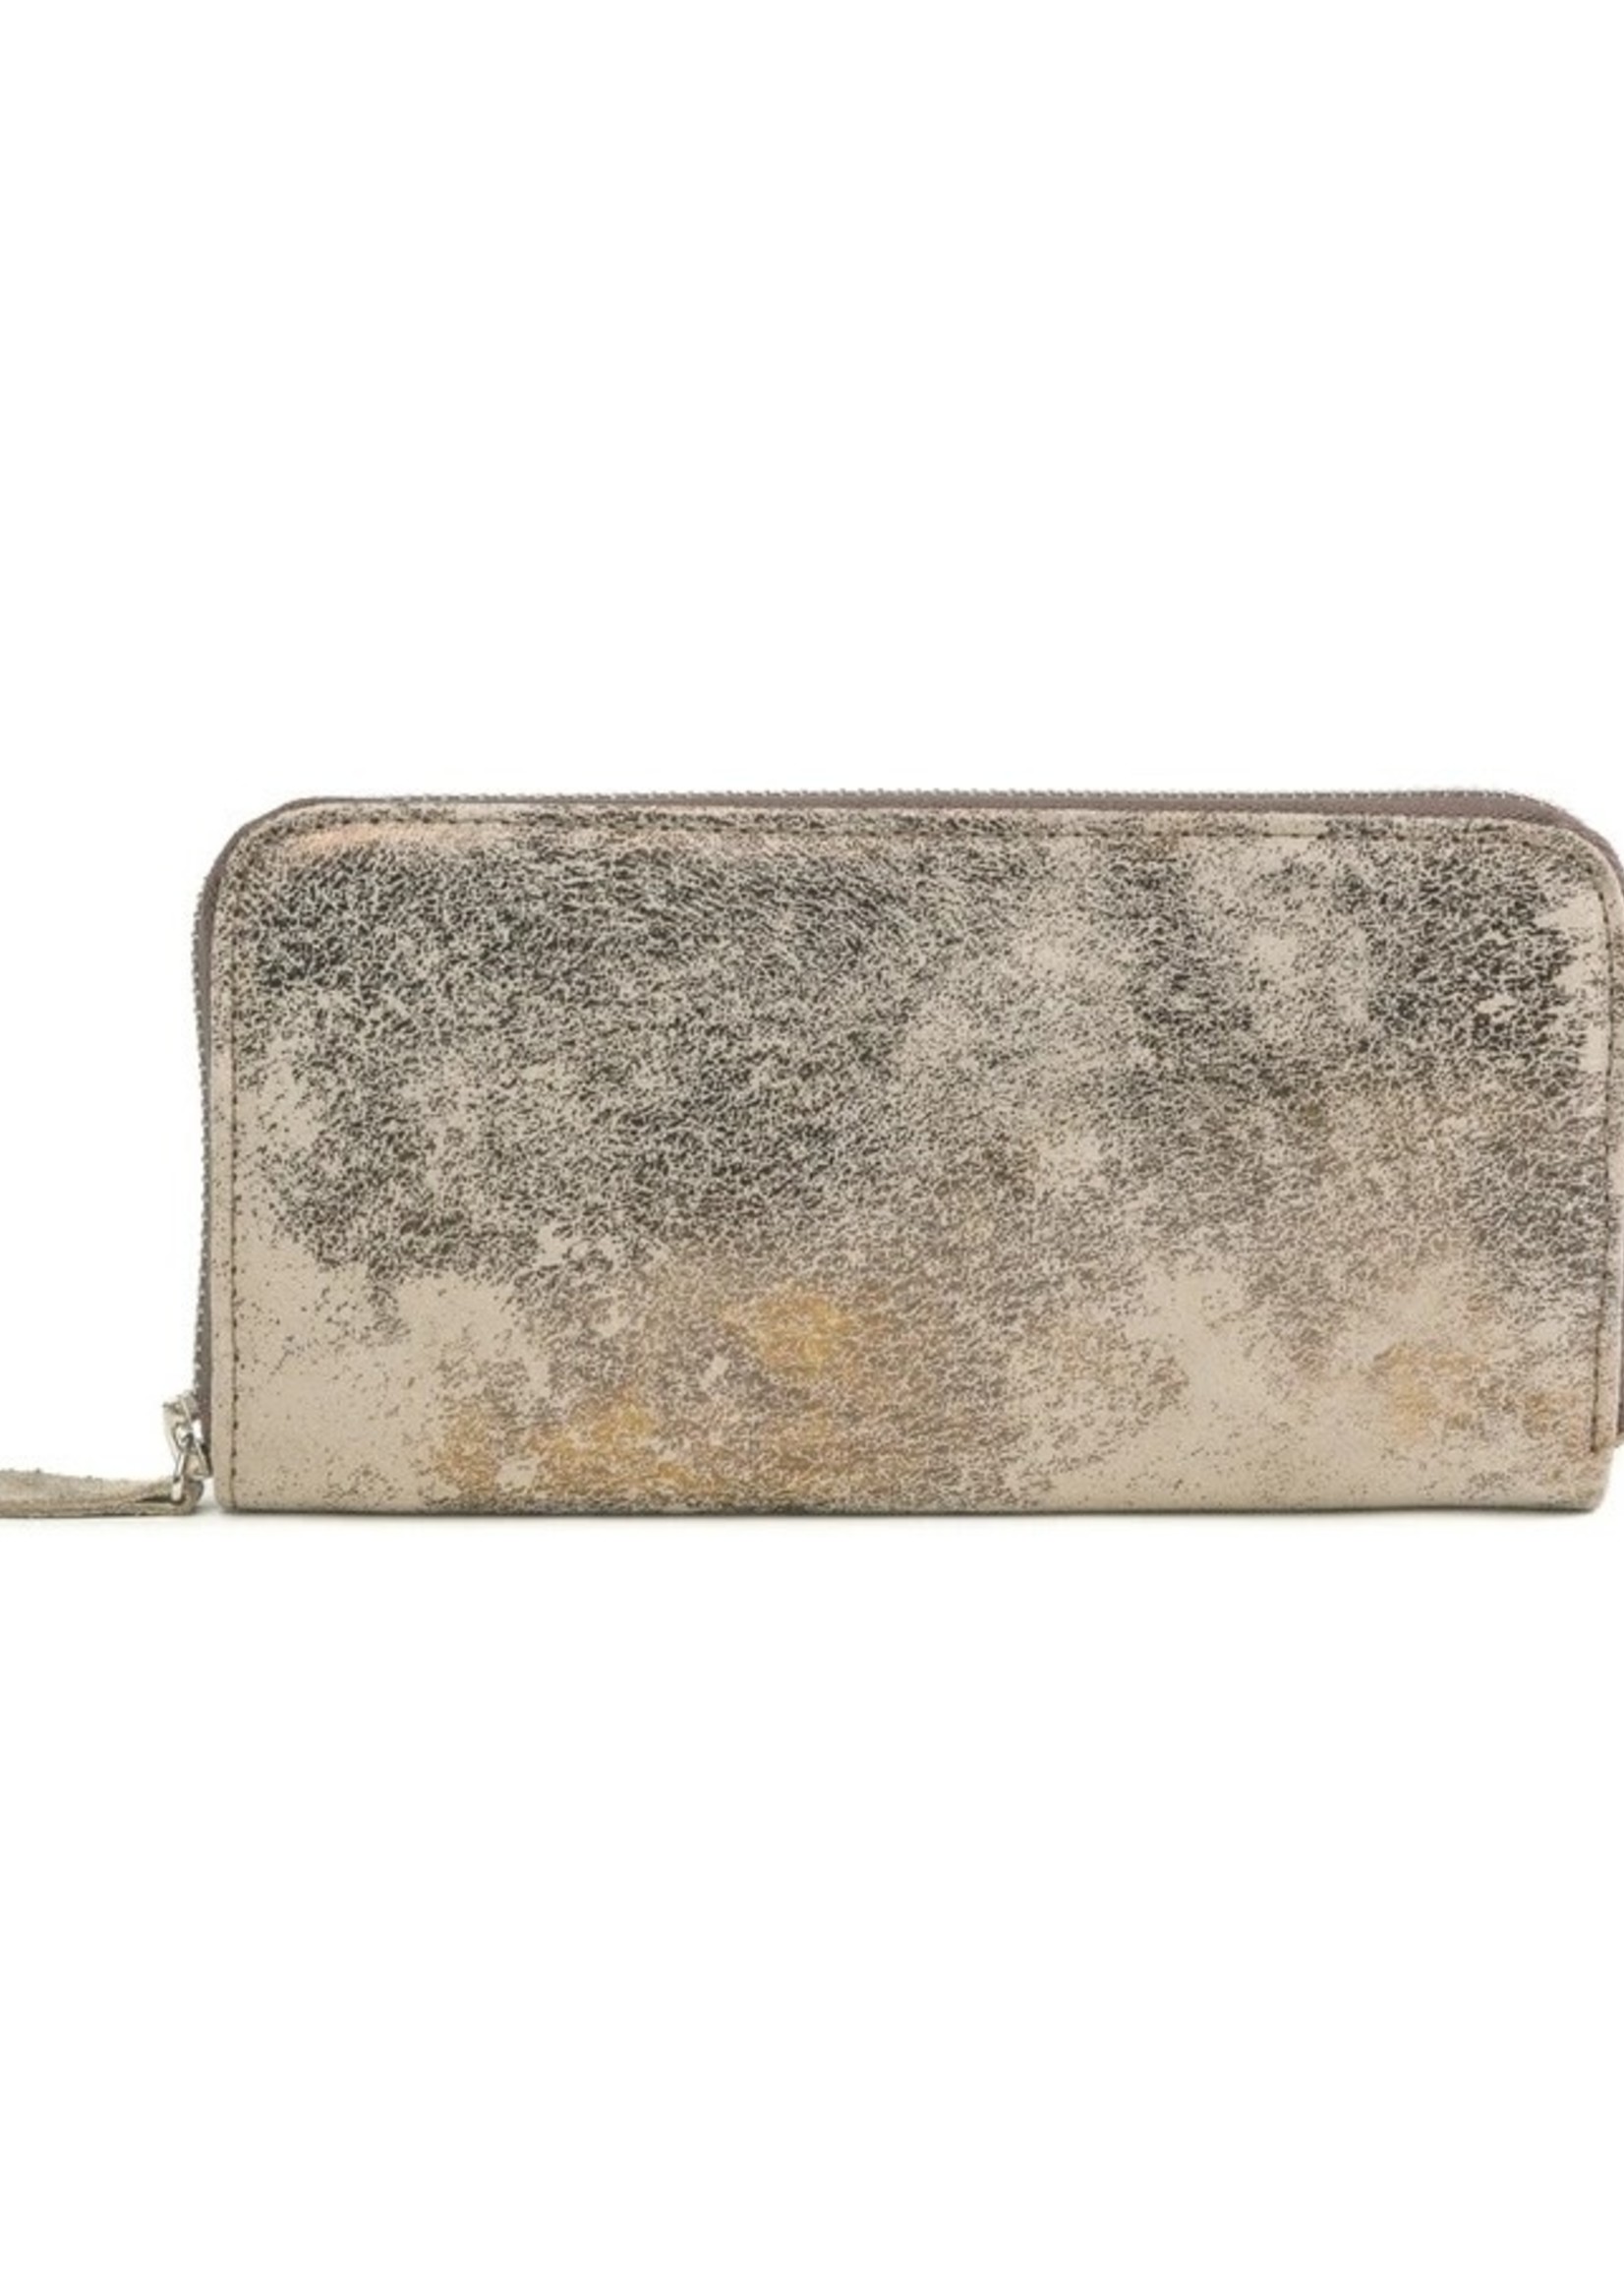 CoFi Leathers Metallic Zip Wallet